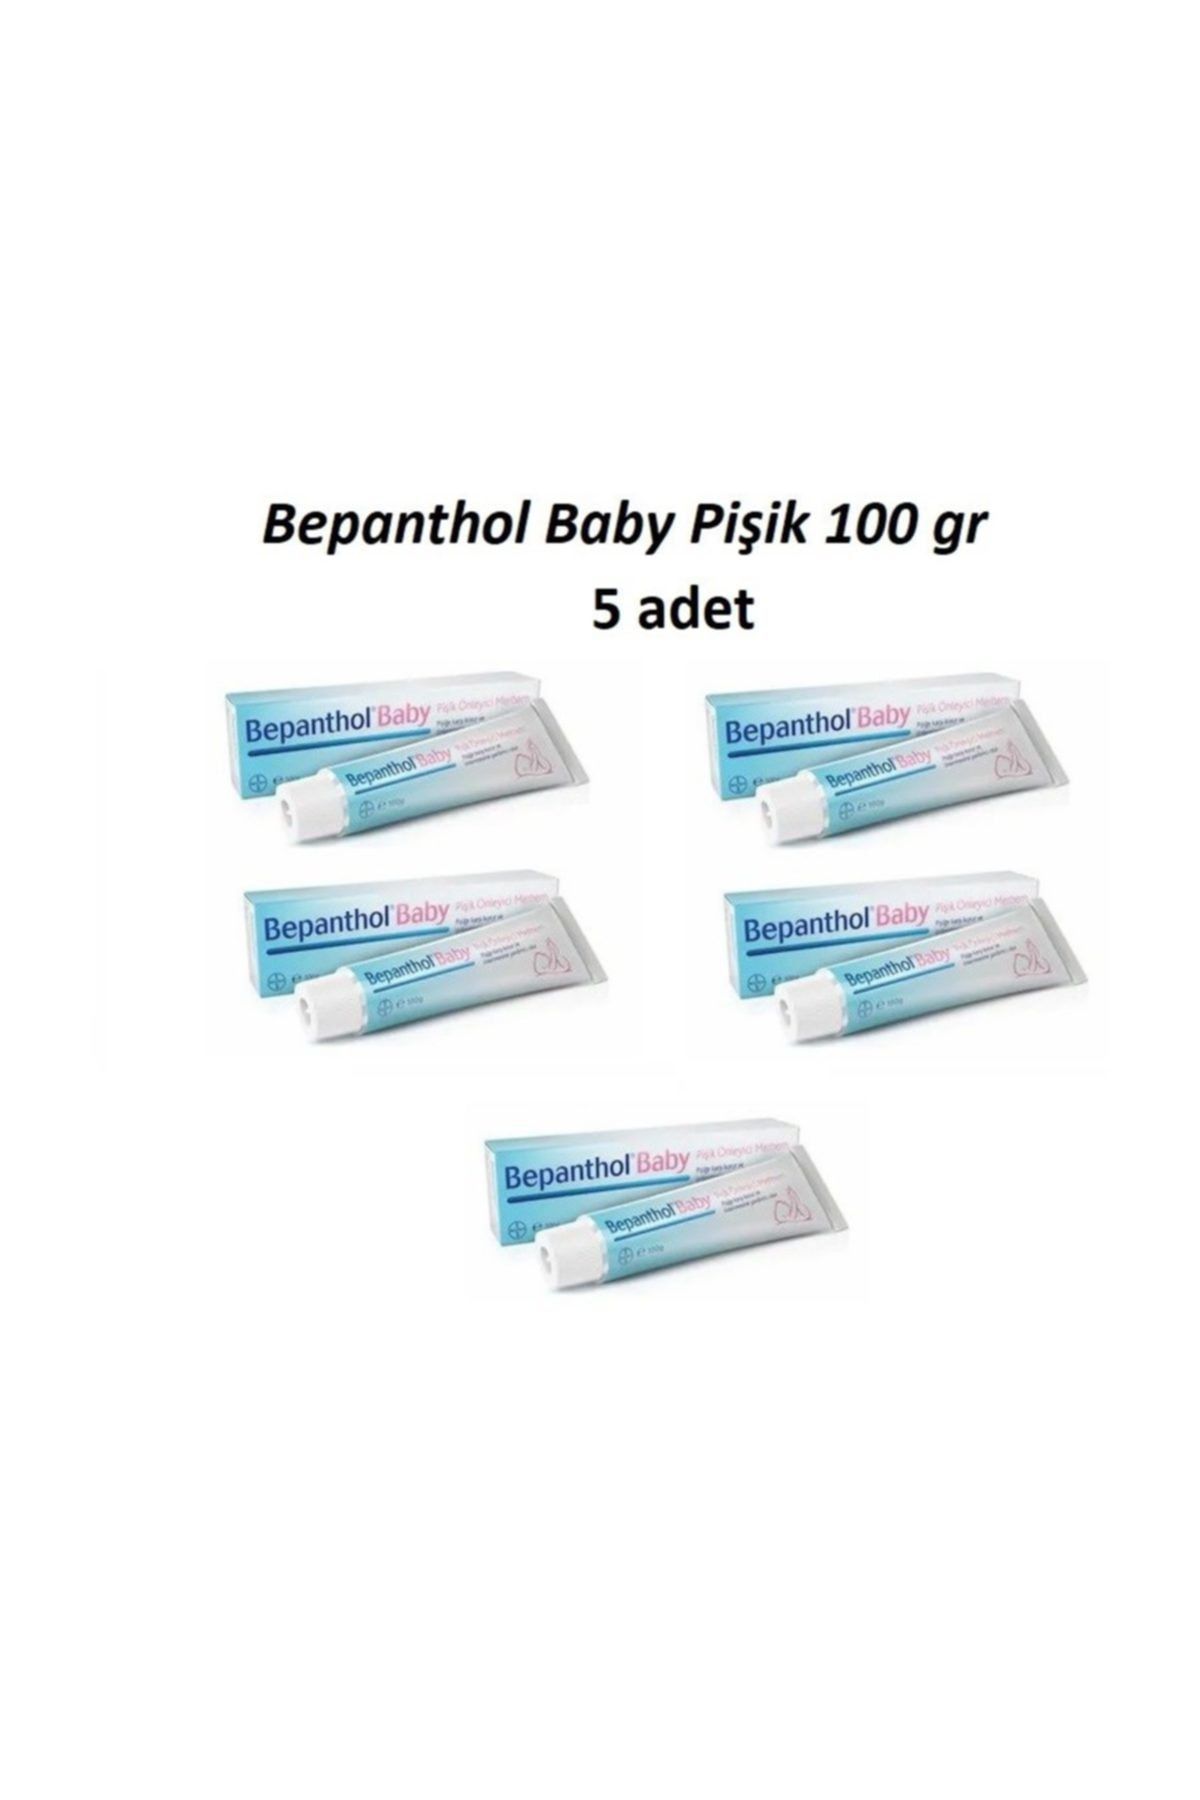 Bepanthol Baby Pişik Kremi Pişik Önleyici 5adet  100 gr.